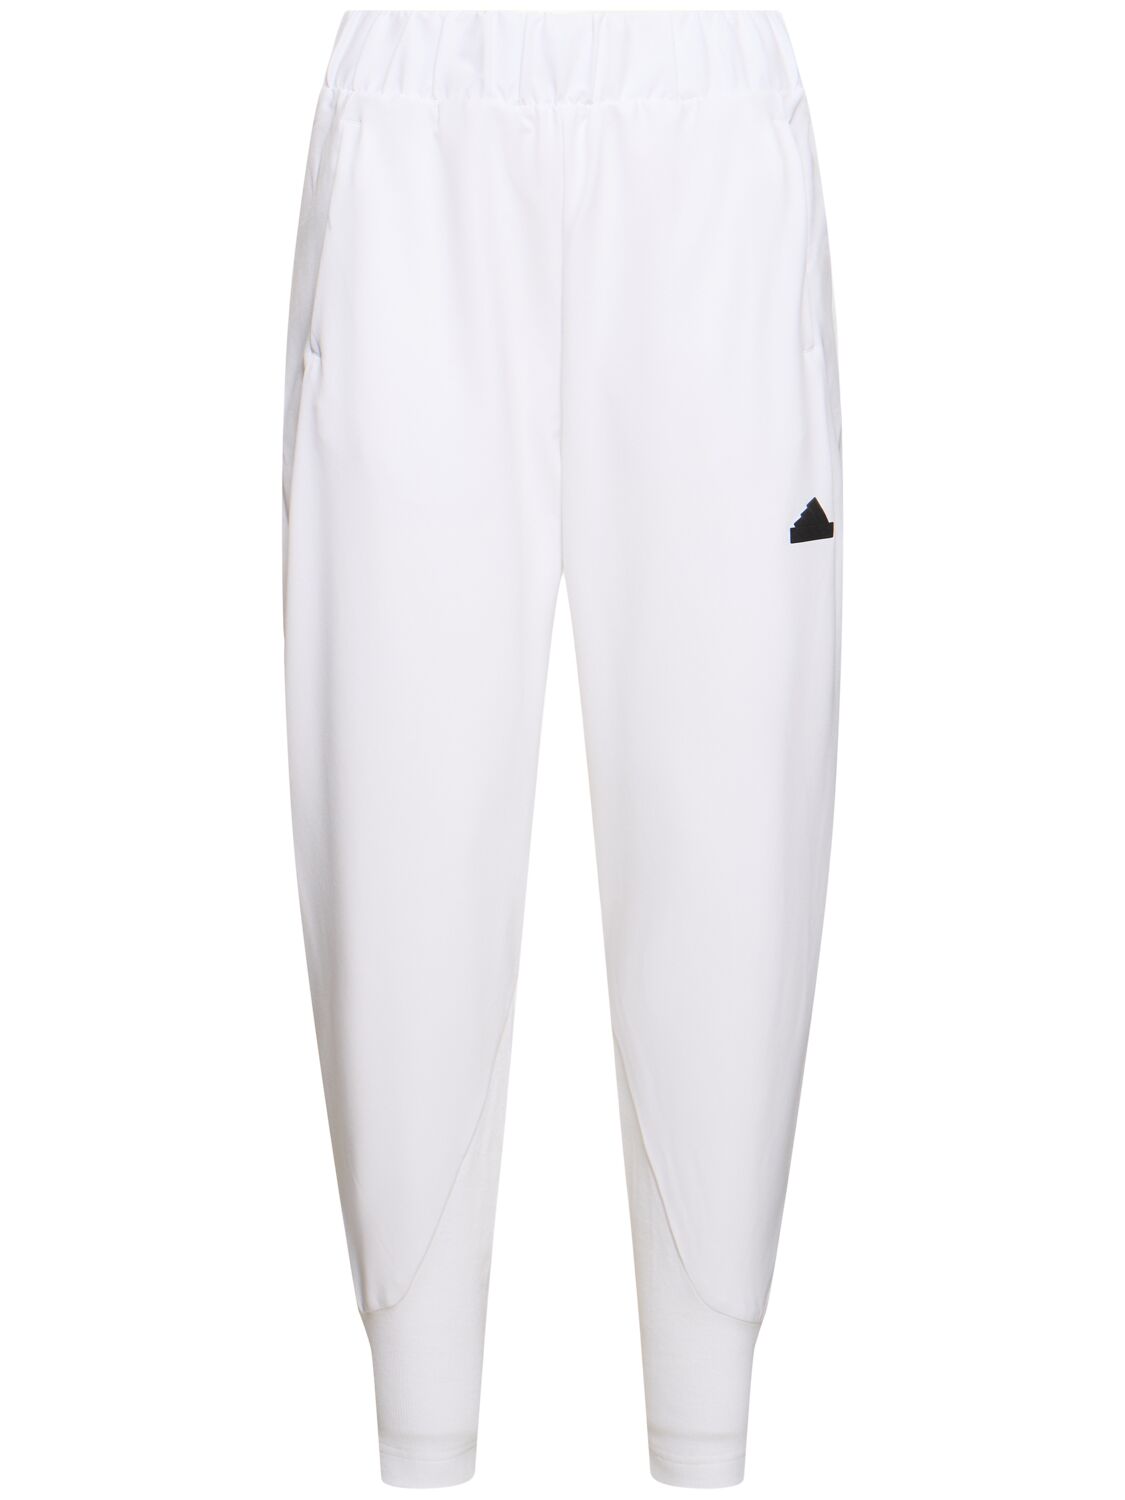 Adidas Originals Zone裤子 In White